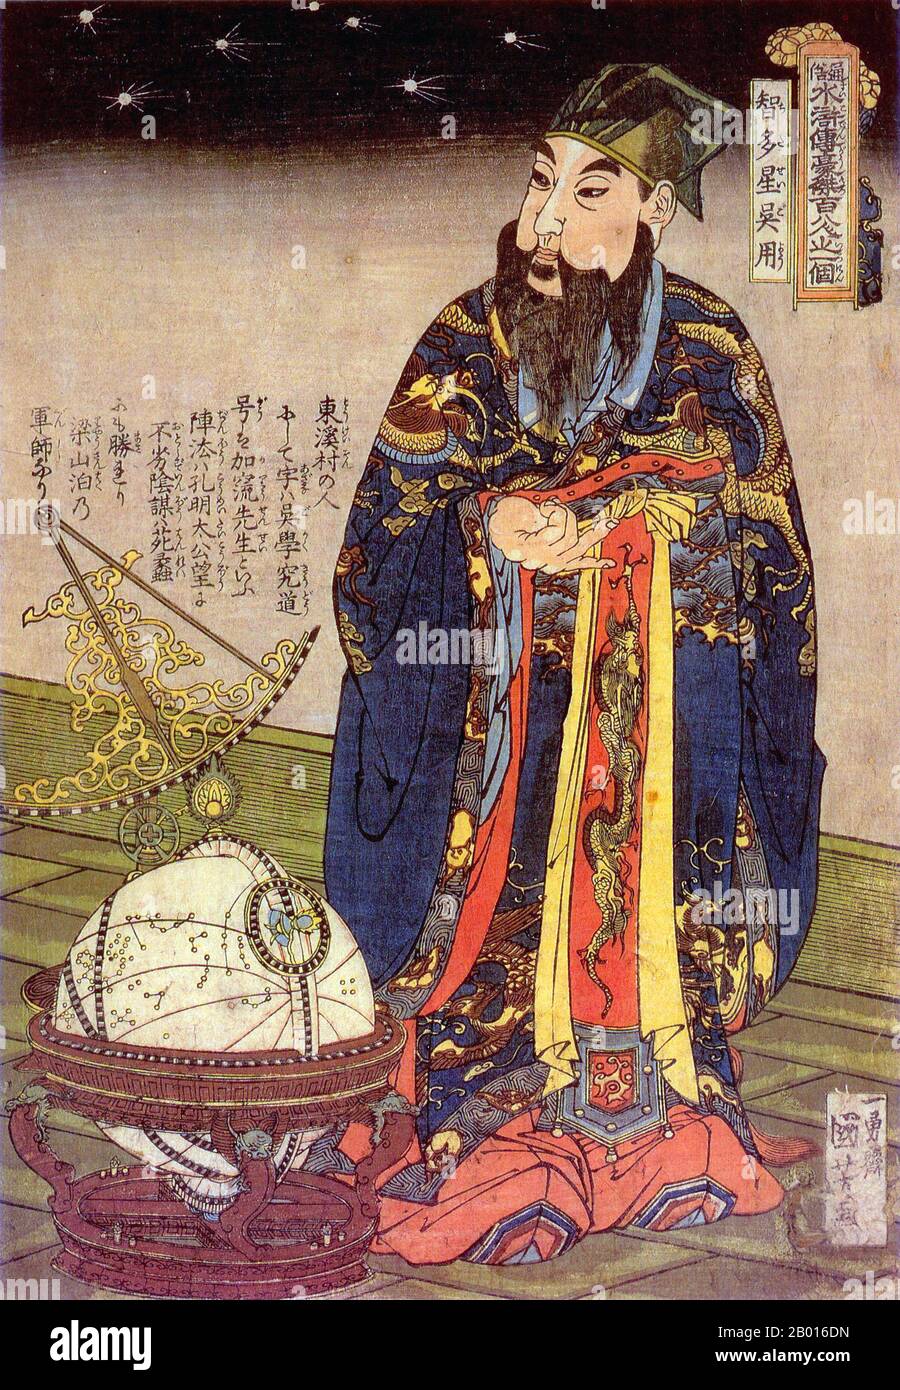 Japon/Chine : Portrait de l'astronome fictif Chicasei Goyo (Wu Yong).Imprimé en blocs de bois Ukiyo-e par Utagawa Kuniyoshi (1798-1861), c.1827-1830.Wu Yong est un personnage fictif dans la marge de l'eau, l'un des quatre grands romans classiques de la littérature chinoise.Il se classe au 3e rang des 36 esprits célestes des 108 héros Liangshan et est surnommé l'« étoile pleine de ressources ».Il s'appelle Chicasei Goyo au Japon.Utagawa Kuniyoshi a été l'un des derniers grands maîtres du style ukiyo-e japonais d'imprimés et de peinture de blocs de bois.Il est associé à l'école Utagawa. Banque D'Images